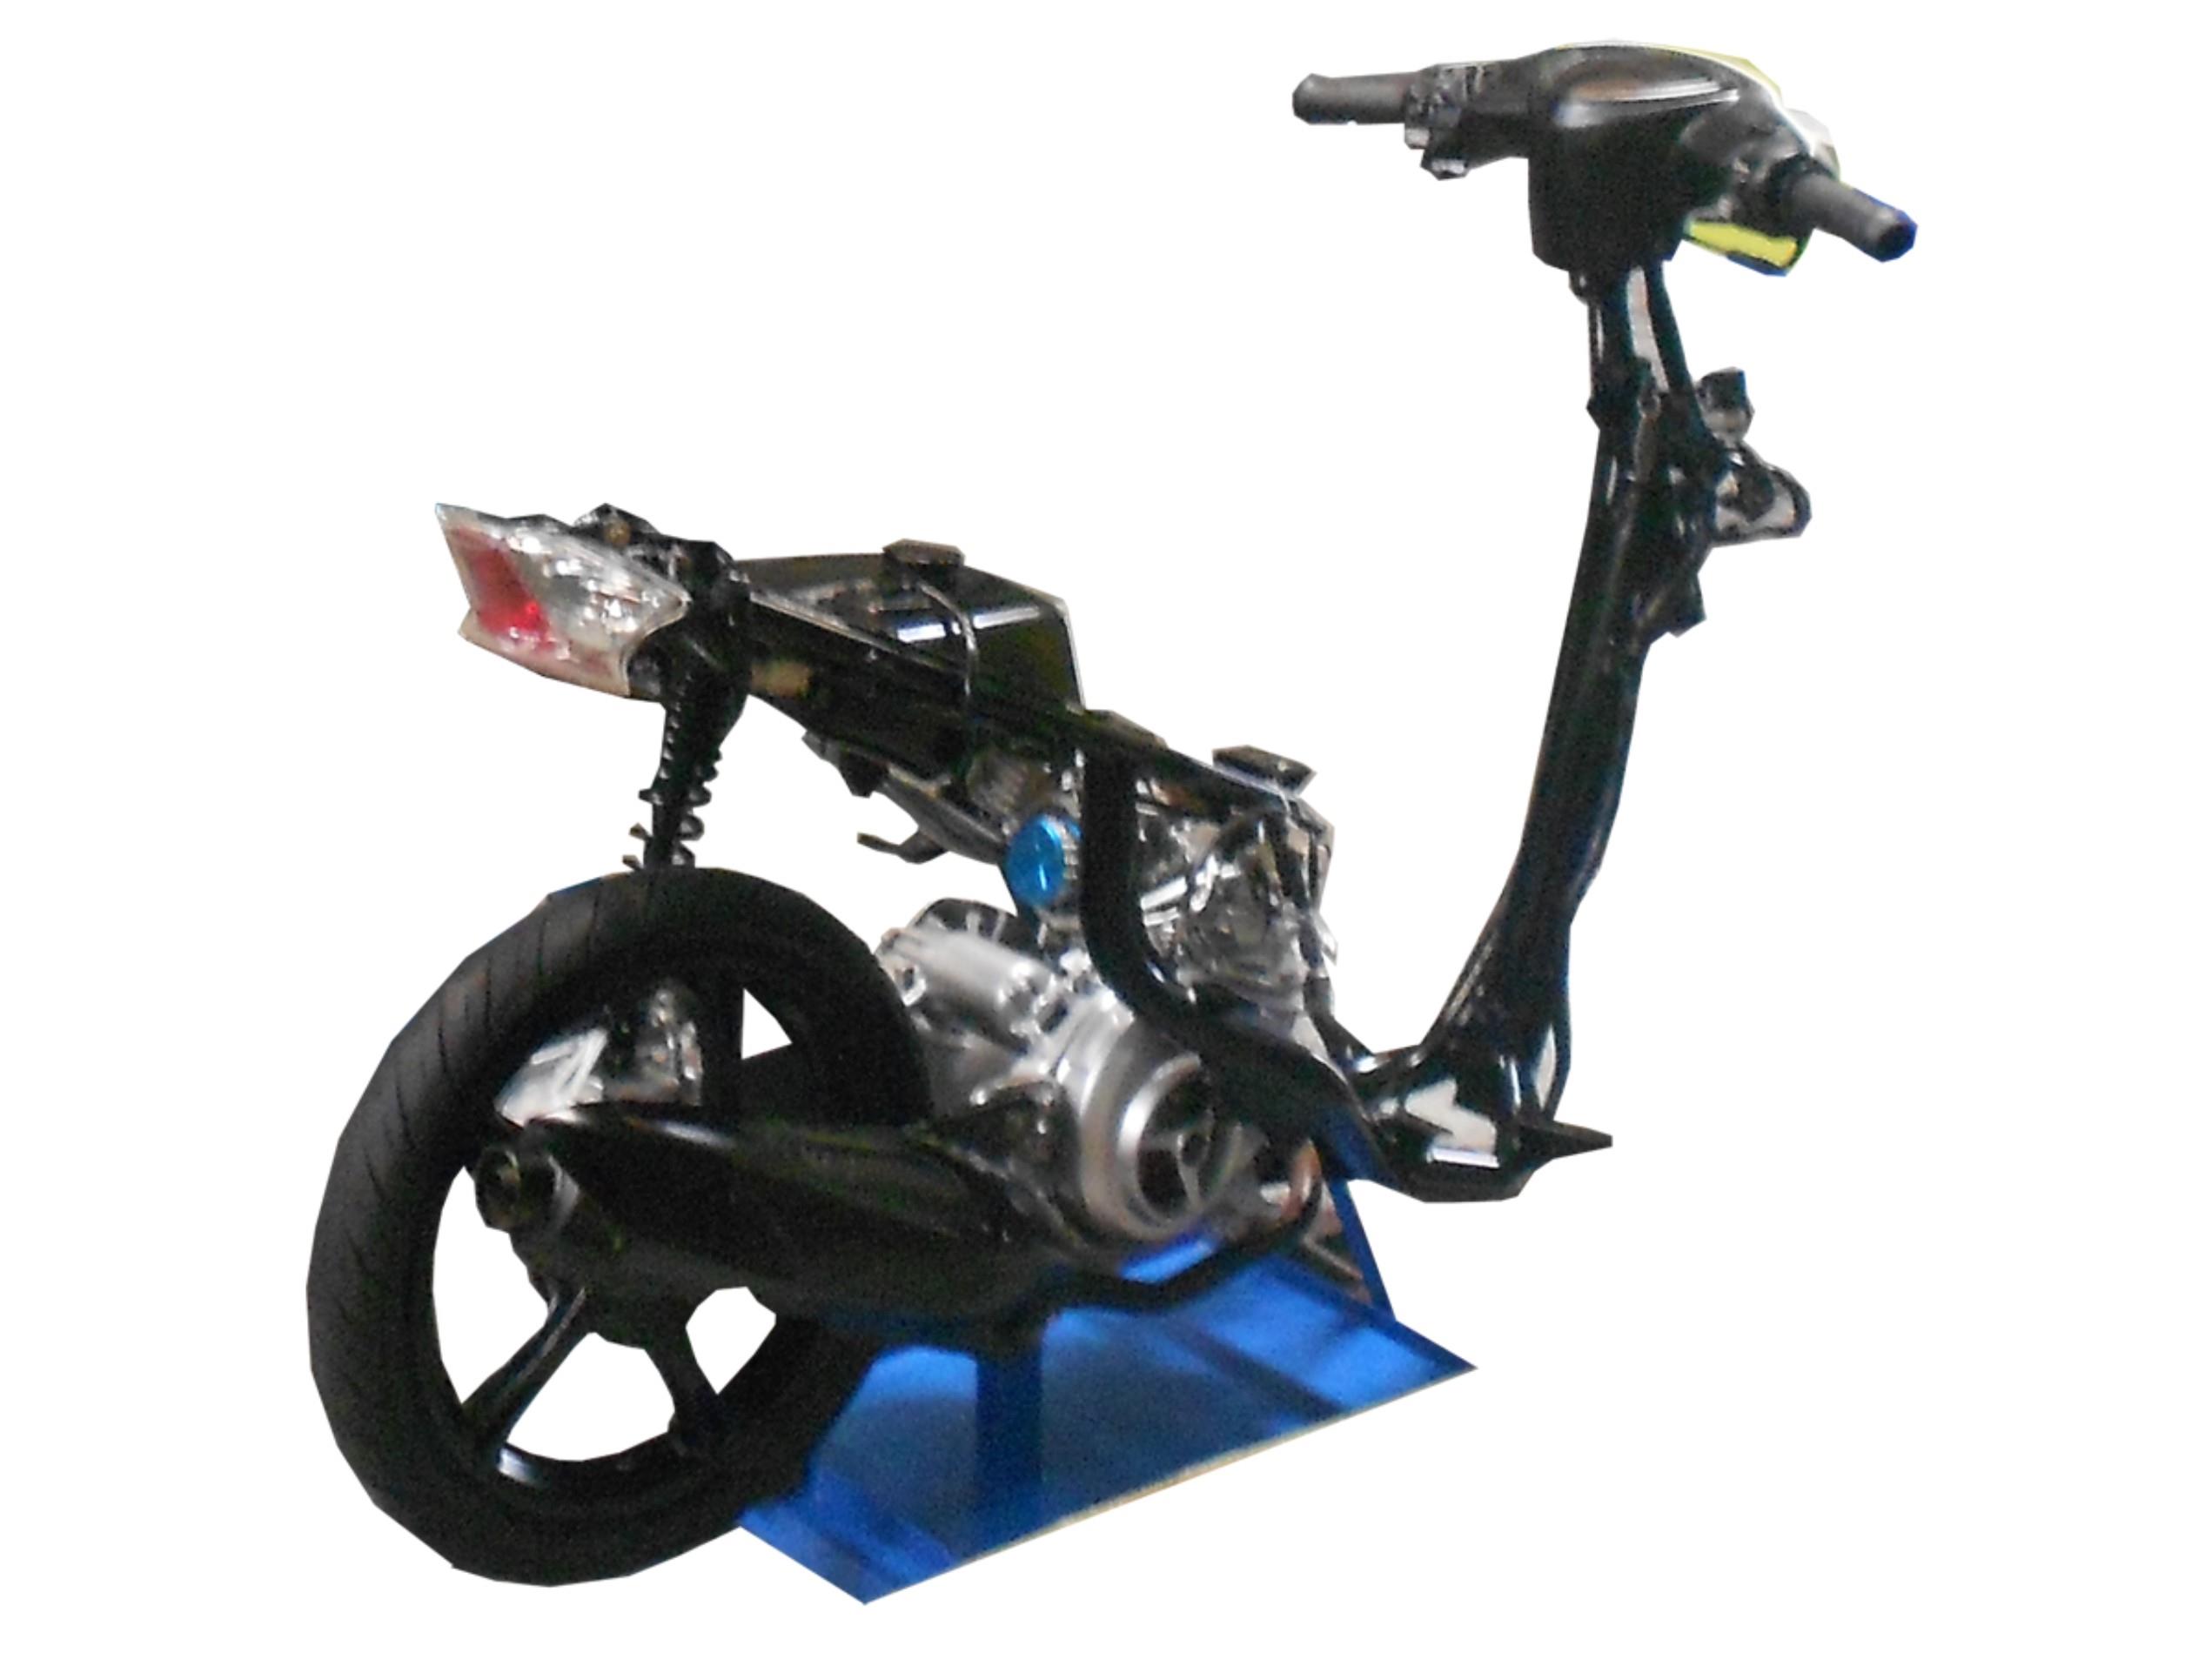 Jual Alat Peraga Trainer Sepeda Motor Suzuki Spin Harga Murah Solo